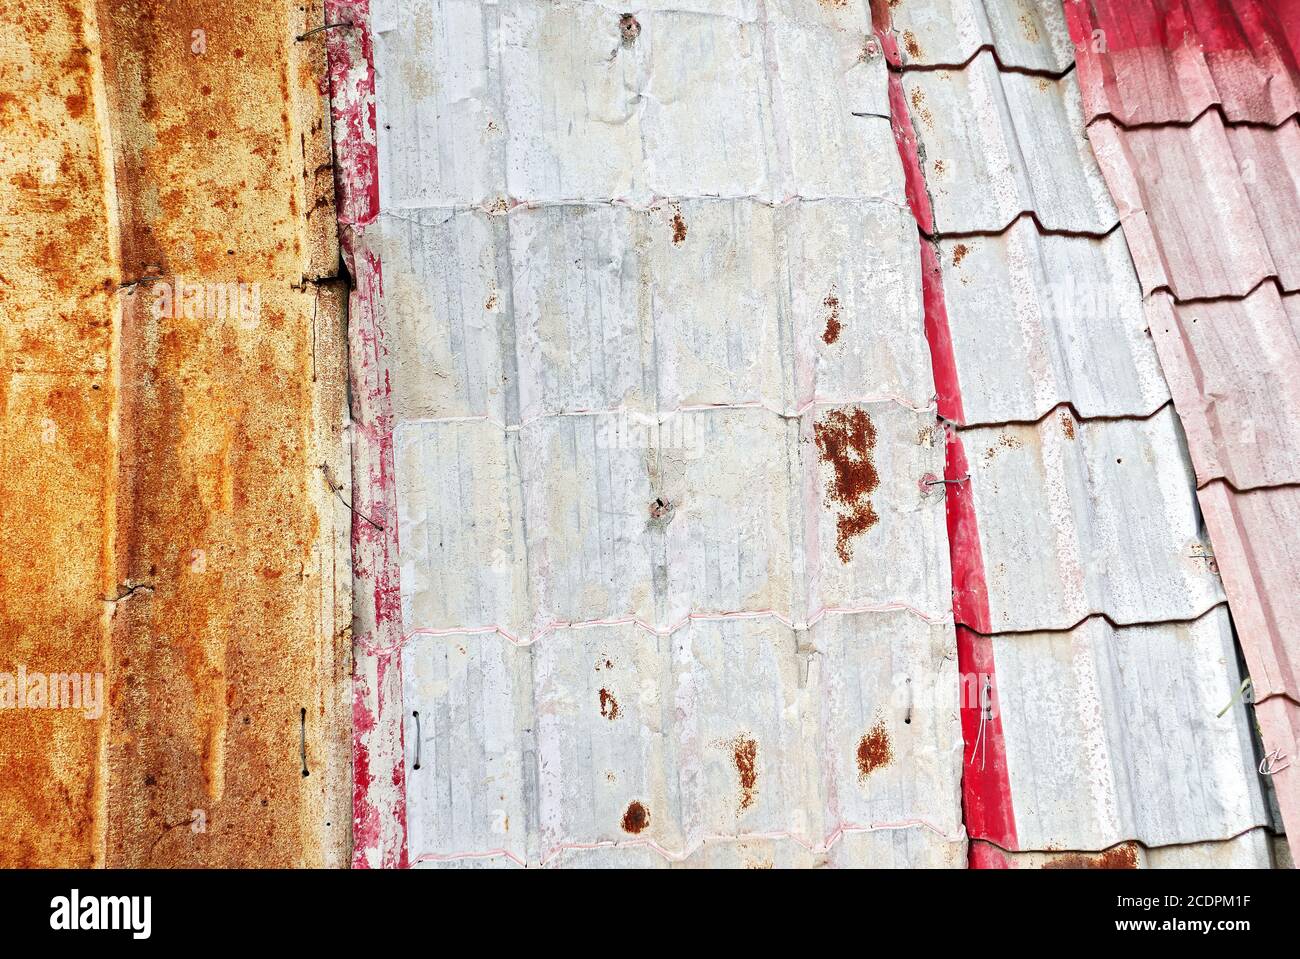 Vue détaillée des anciennes tôles rouillées et peintes utilisées comme toiture, maintenues avec des fils métalliques seulement, souvent vues en Asie Banque D'Images